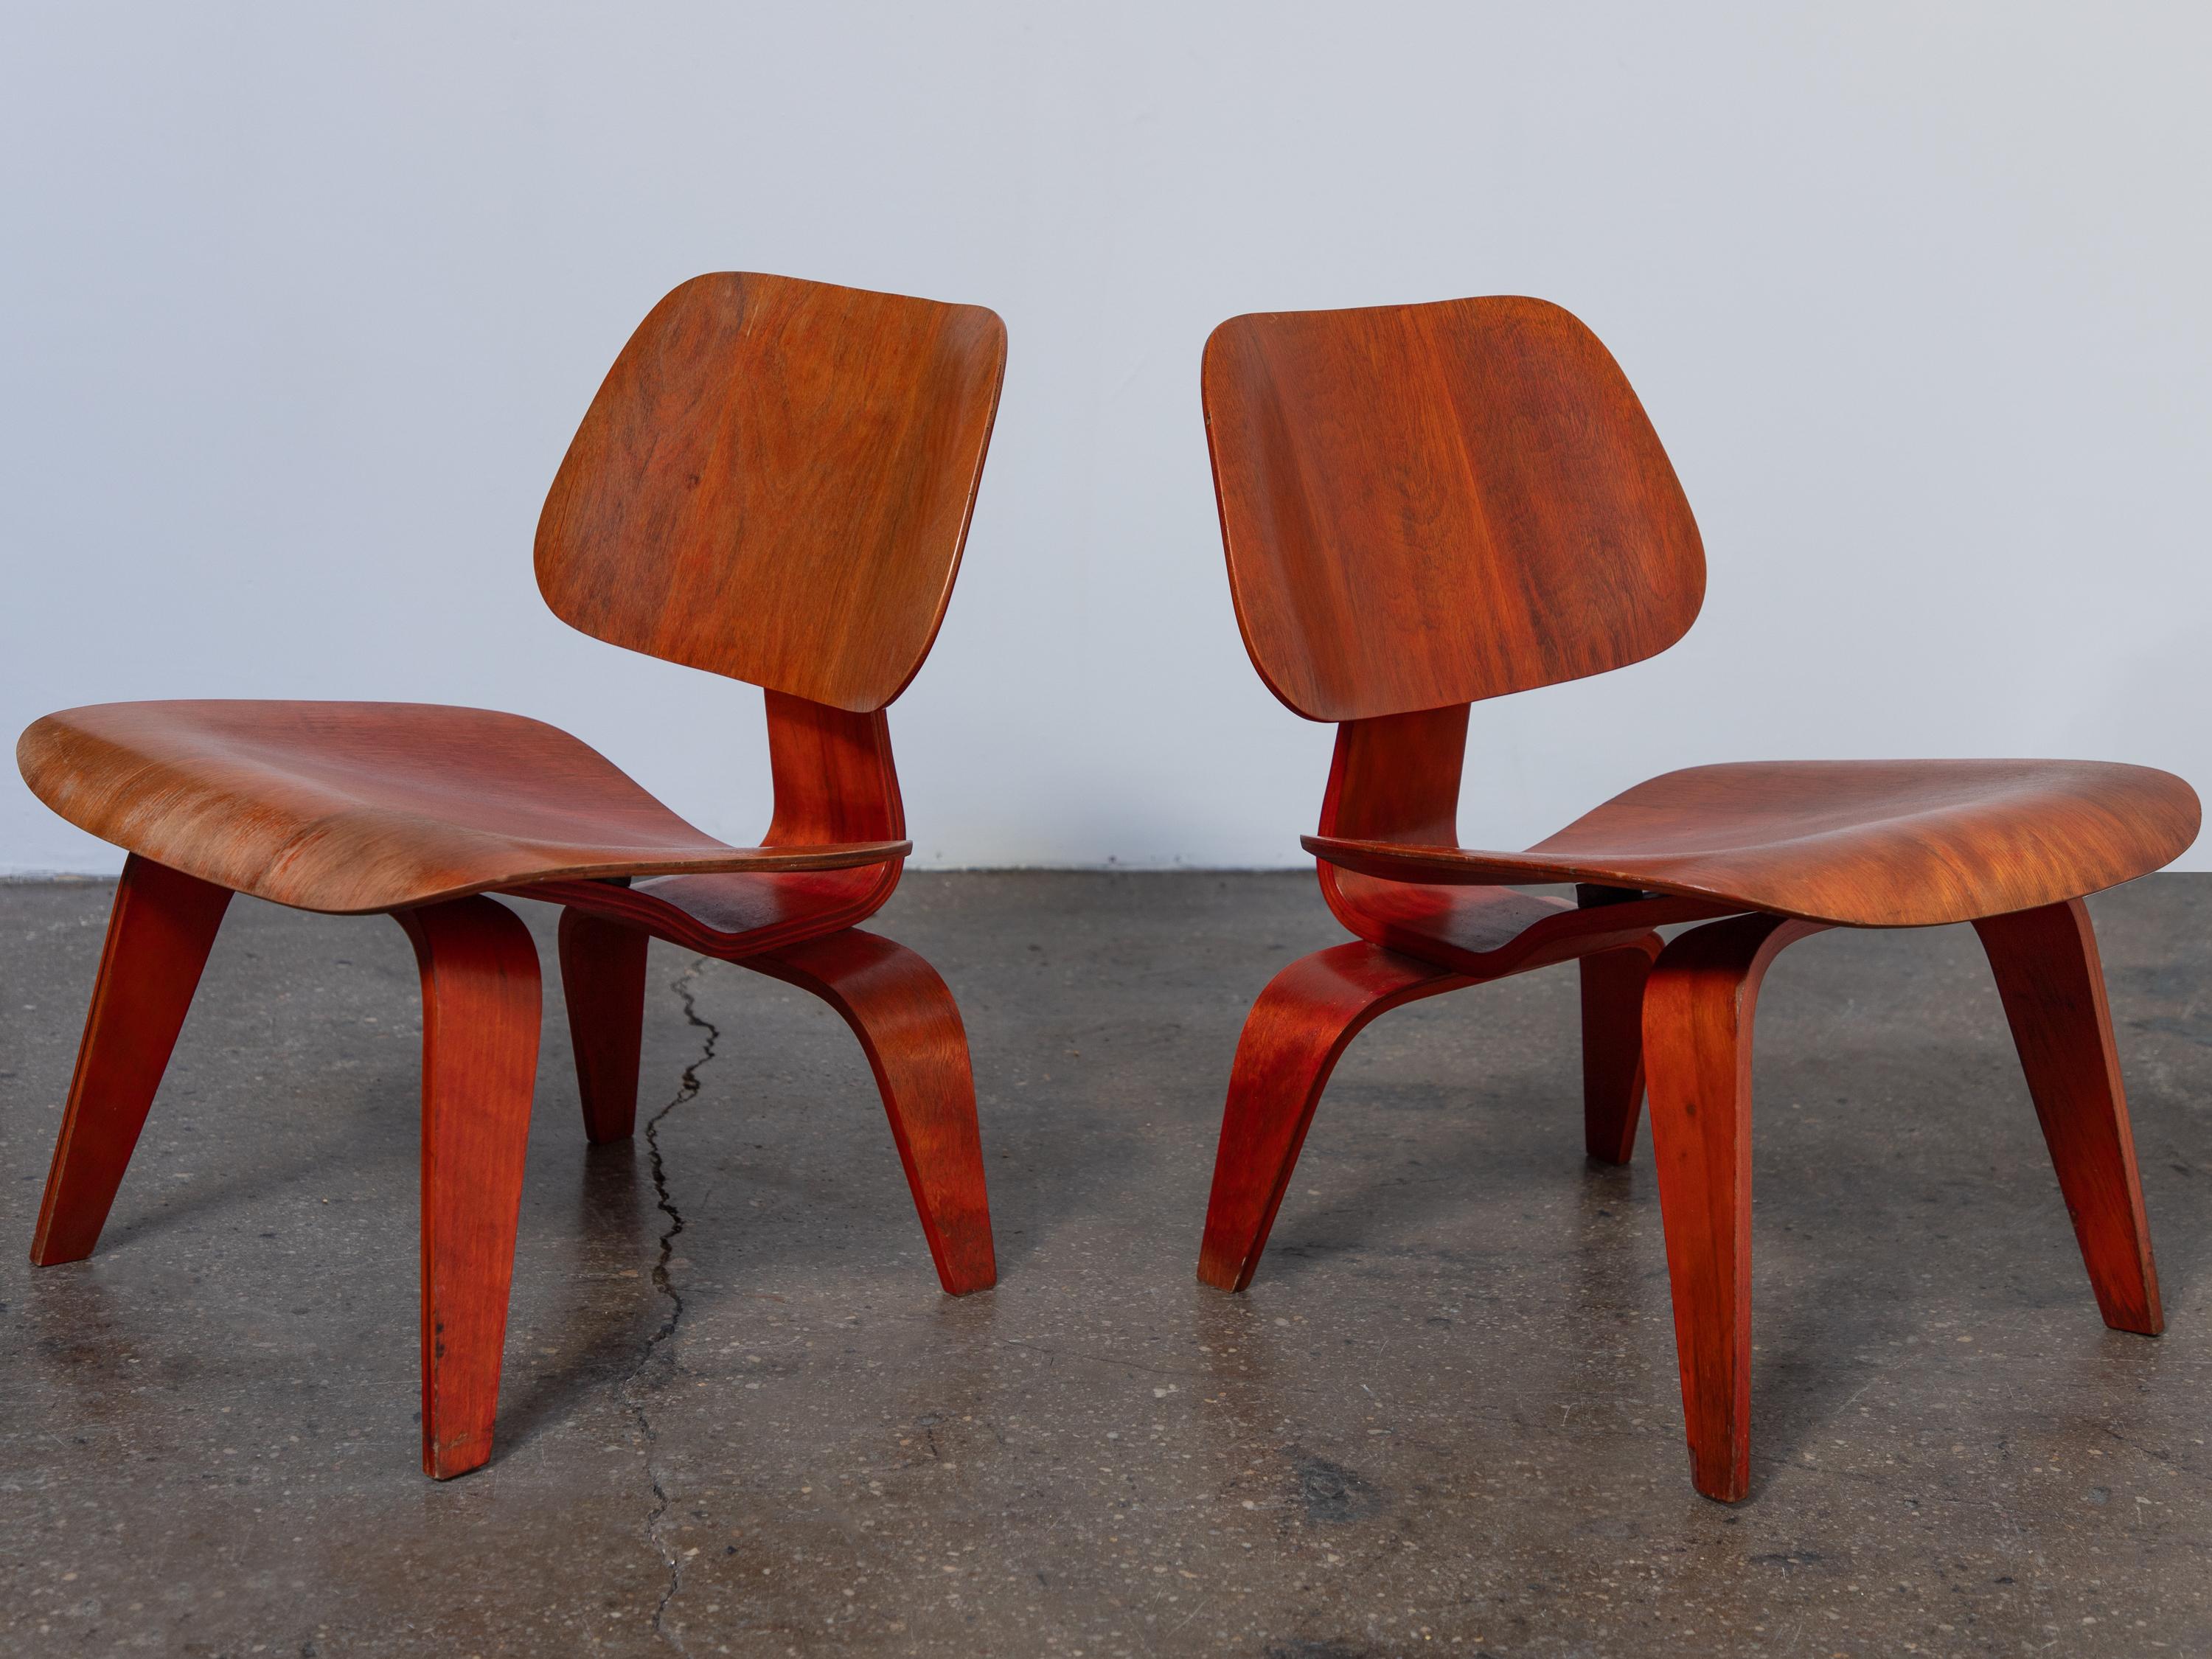 Spectaculaire ensemble assorti de chaises longues LCW à teinture à l'aniline rouge, conçues par Charles et Ray Eames et fabriquées par Evans Product Company (avant la production d'Herman Miller).  Le bois teinté à l'aniline est vibrant et riche,